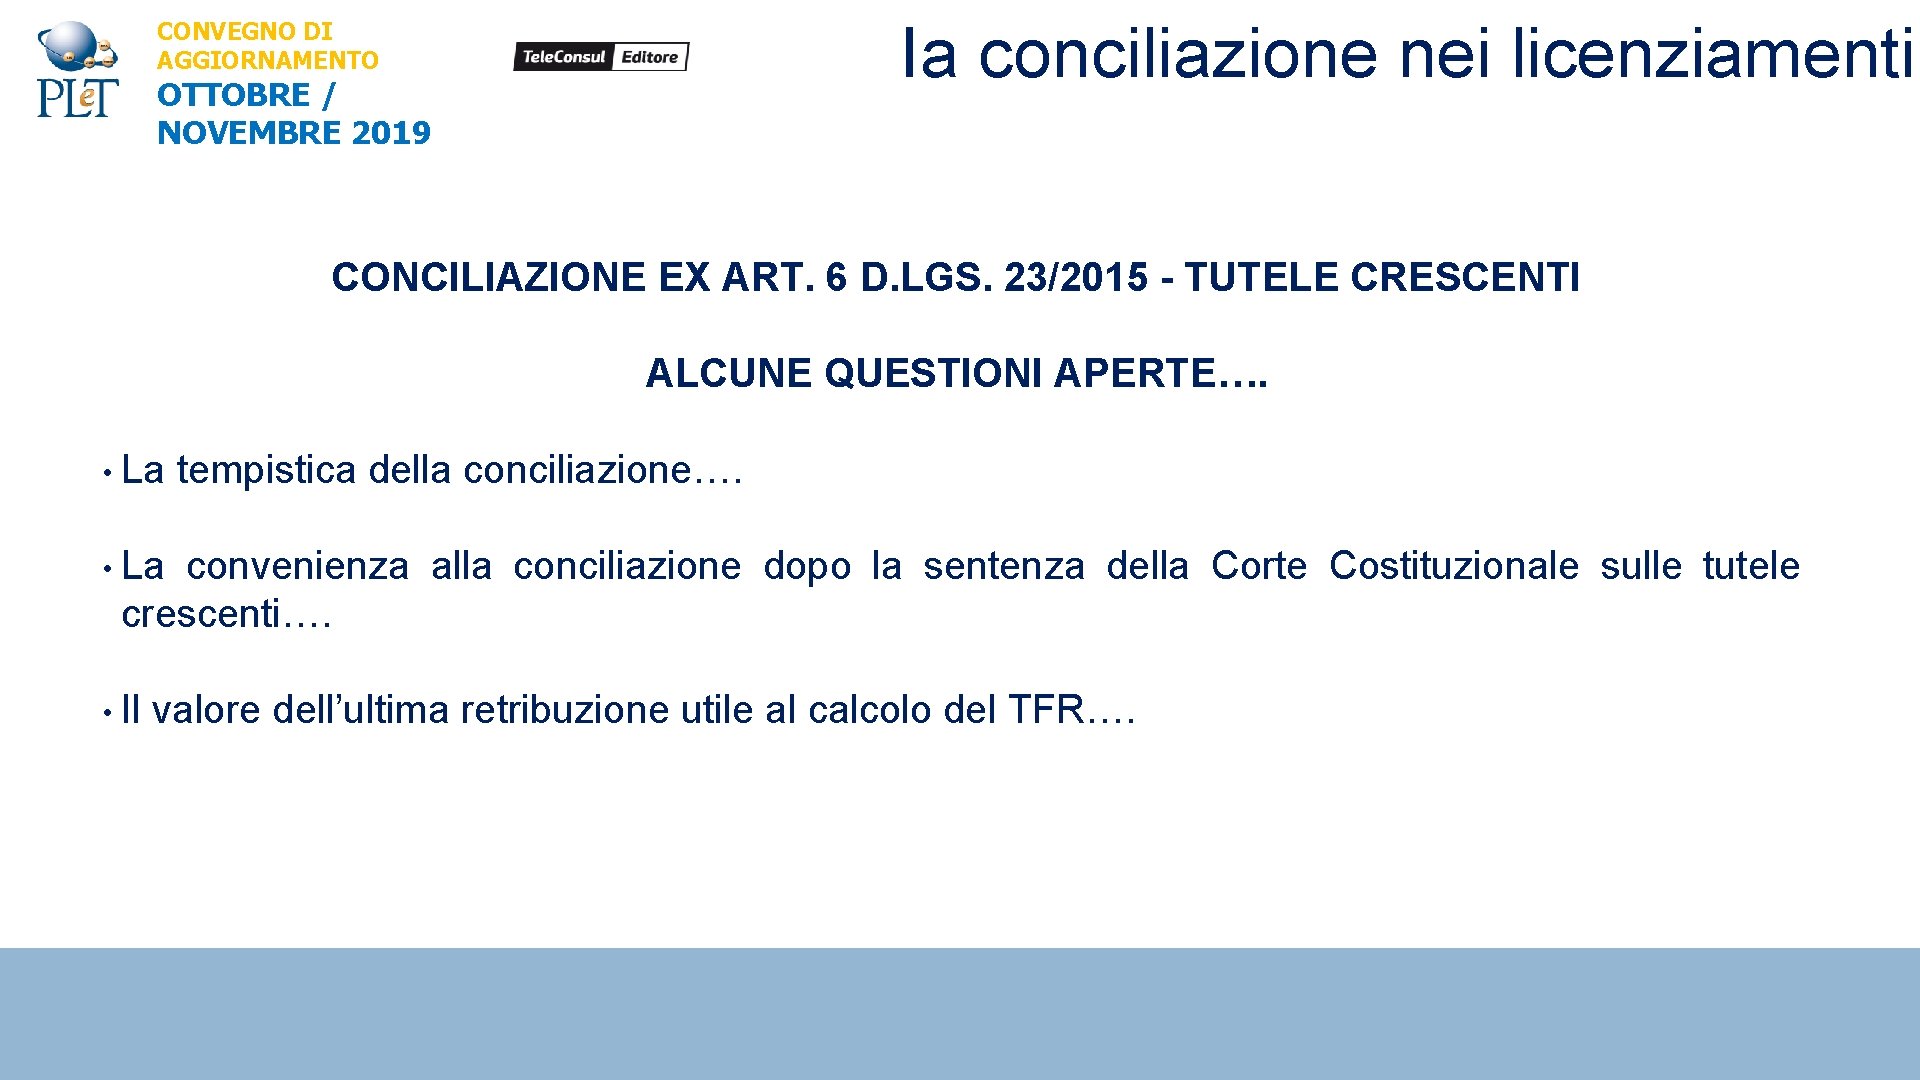 Ia conciliazione nei licenziamenti CONVEGNO DI AGGIORNAMENTO OTTOBRE / NOVEMBRE 2019 CONCILIAZIONE EX ART.